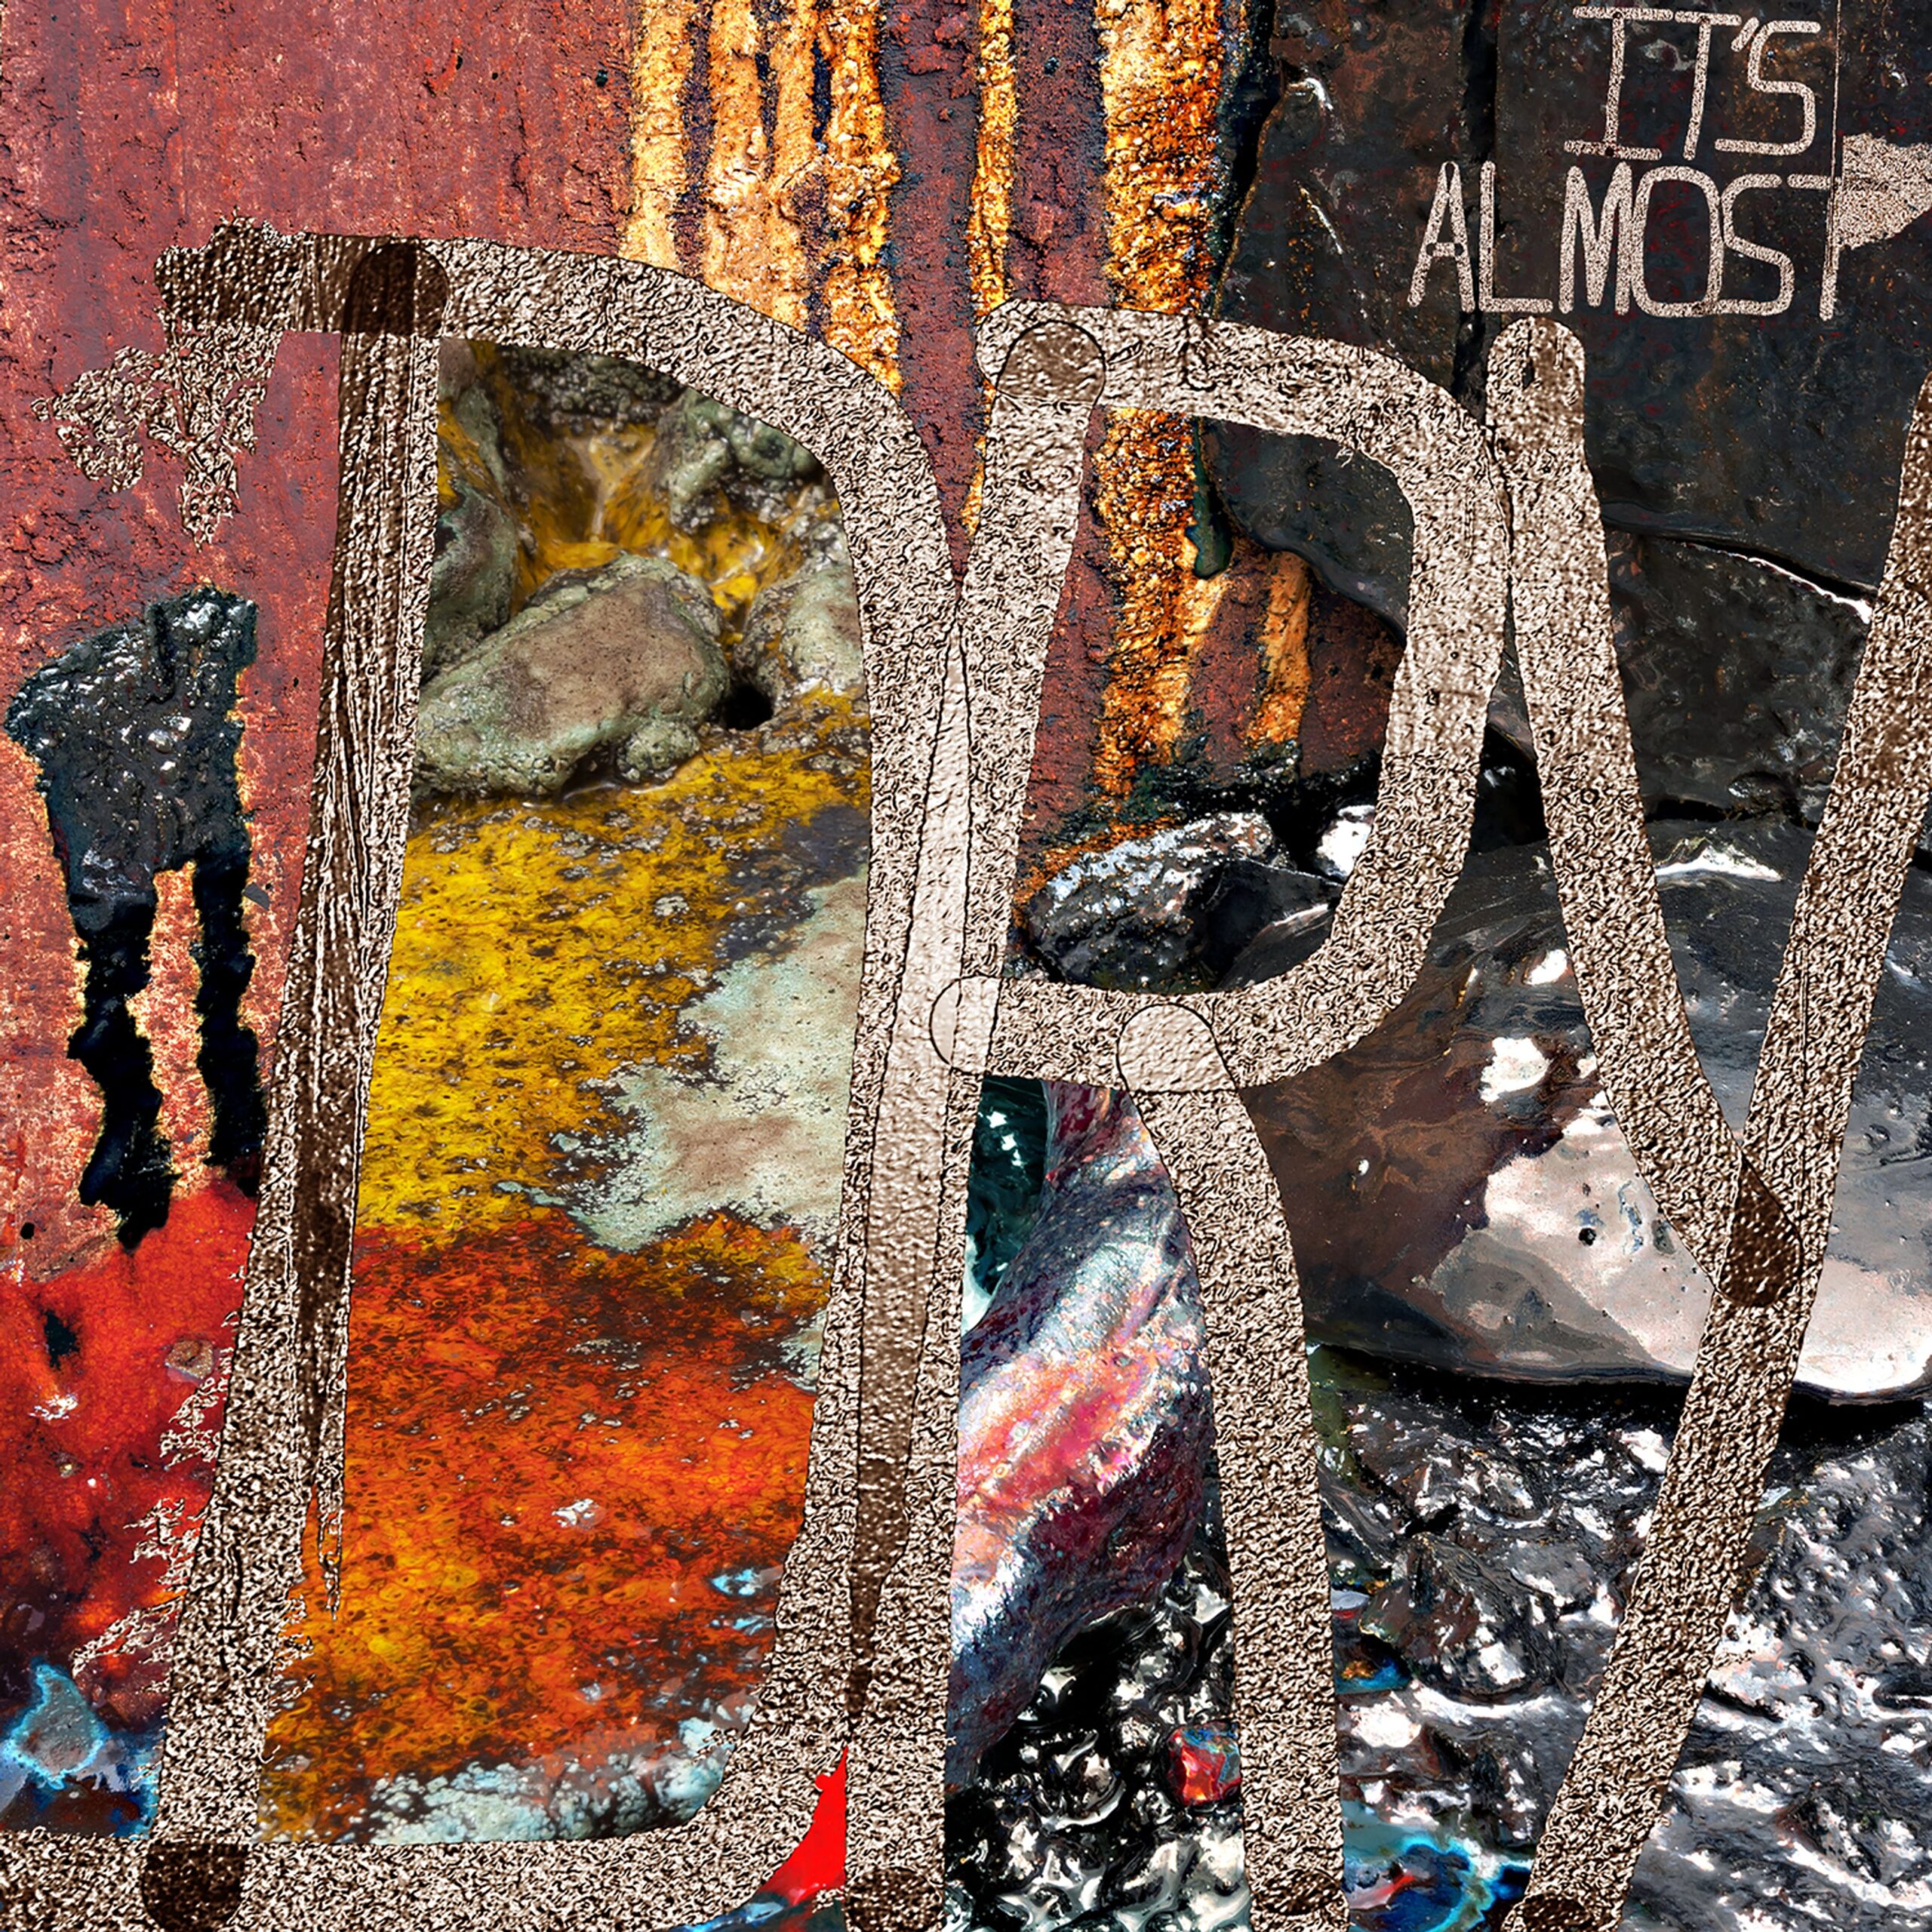 Pusha T Shares 'It's Almost Dry' Album